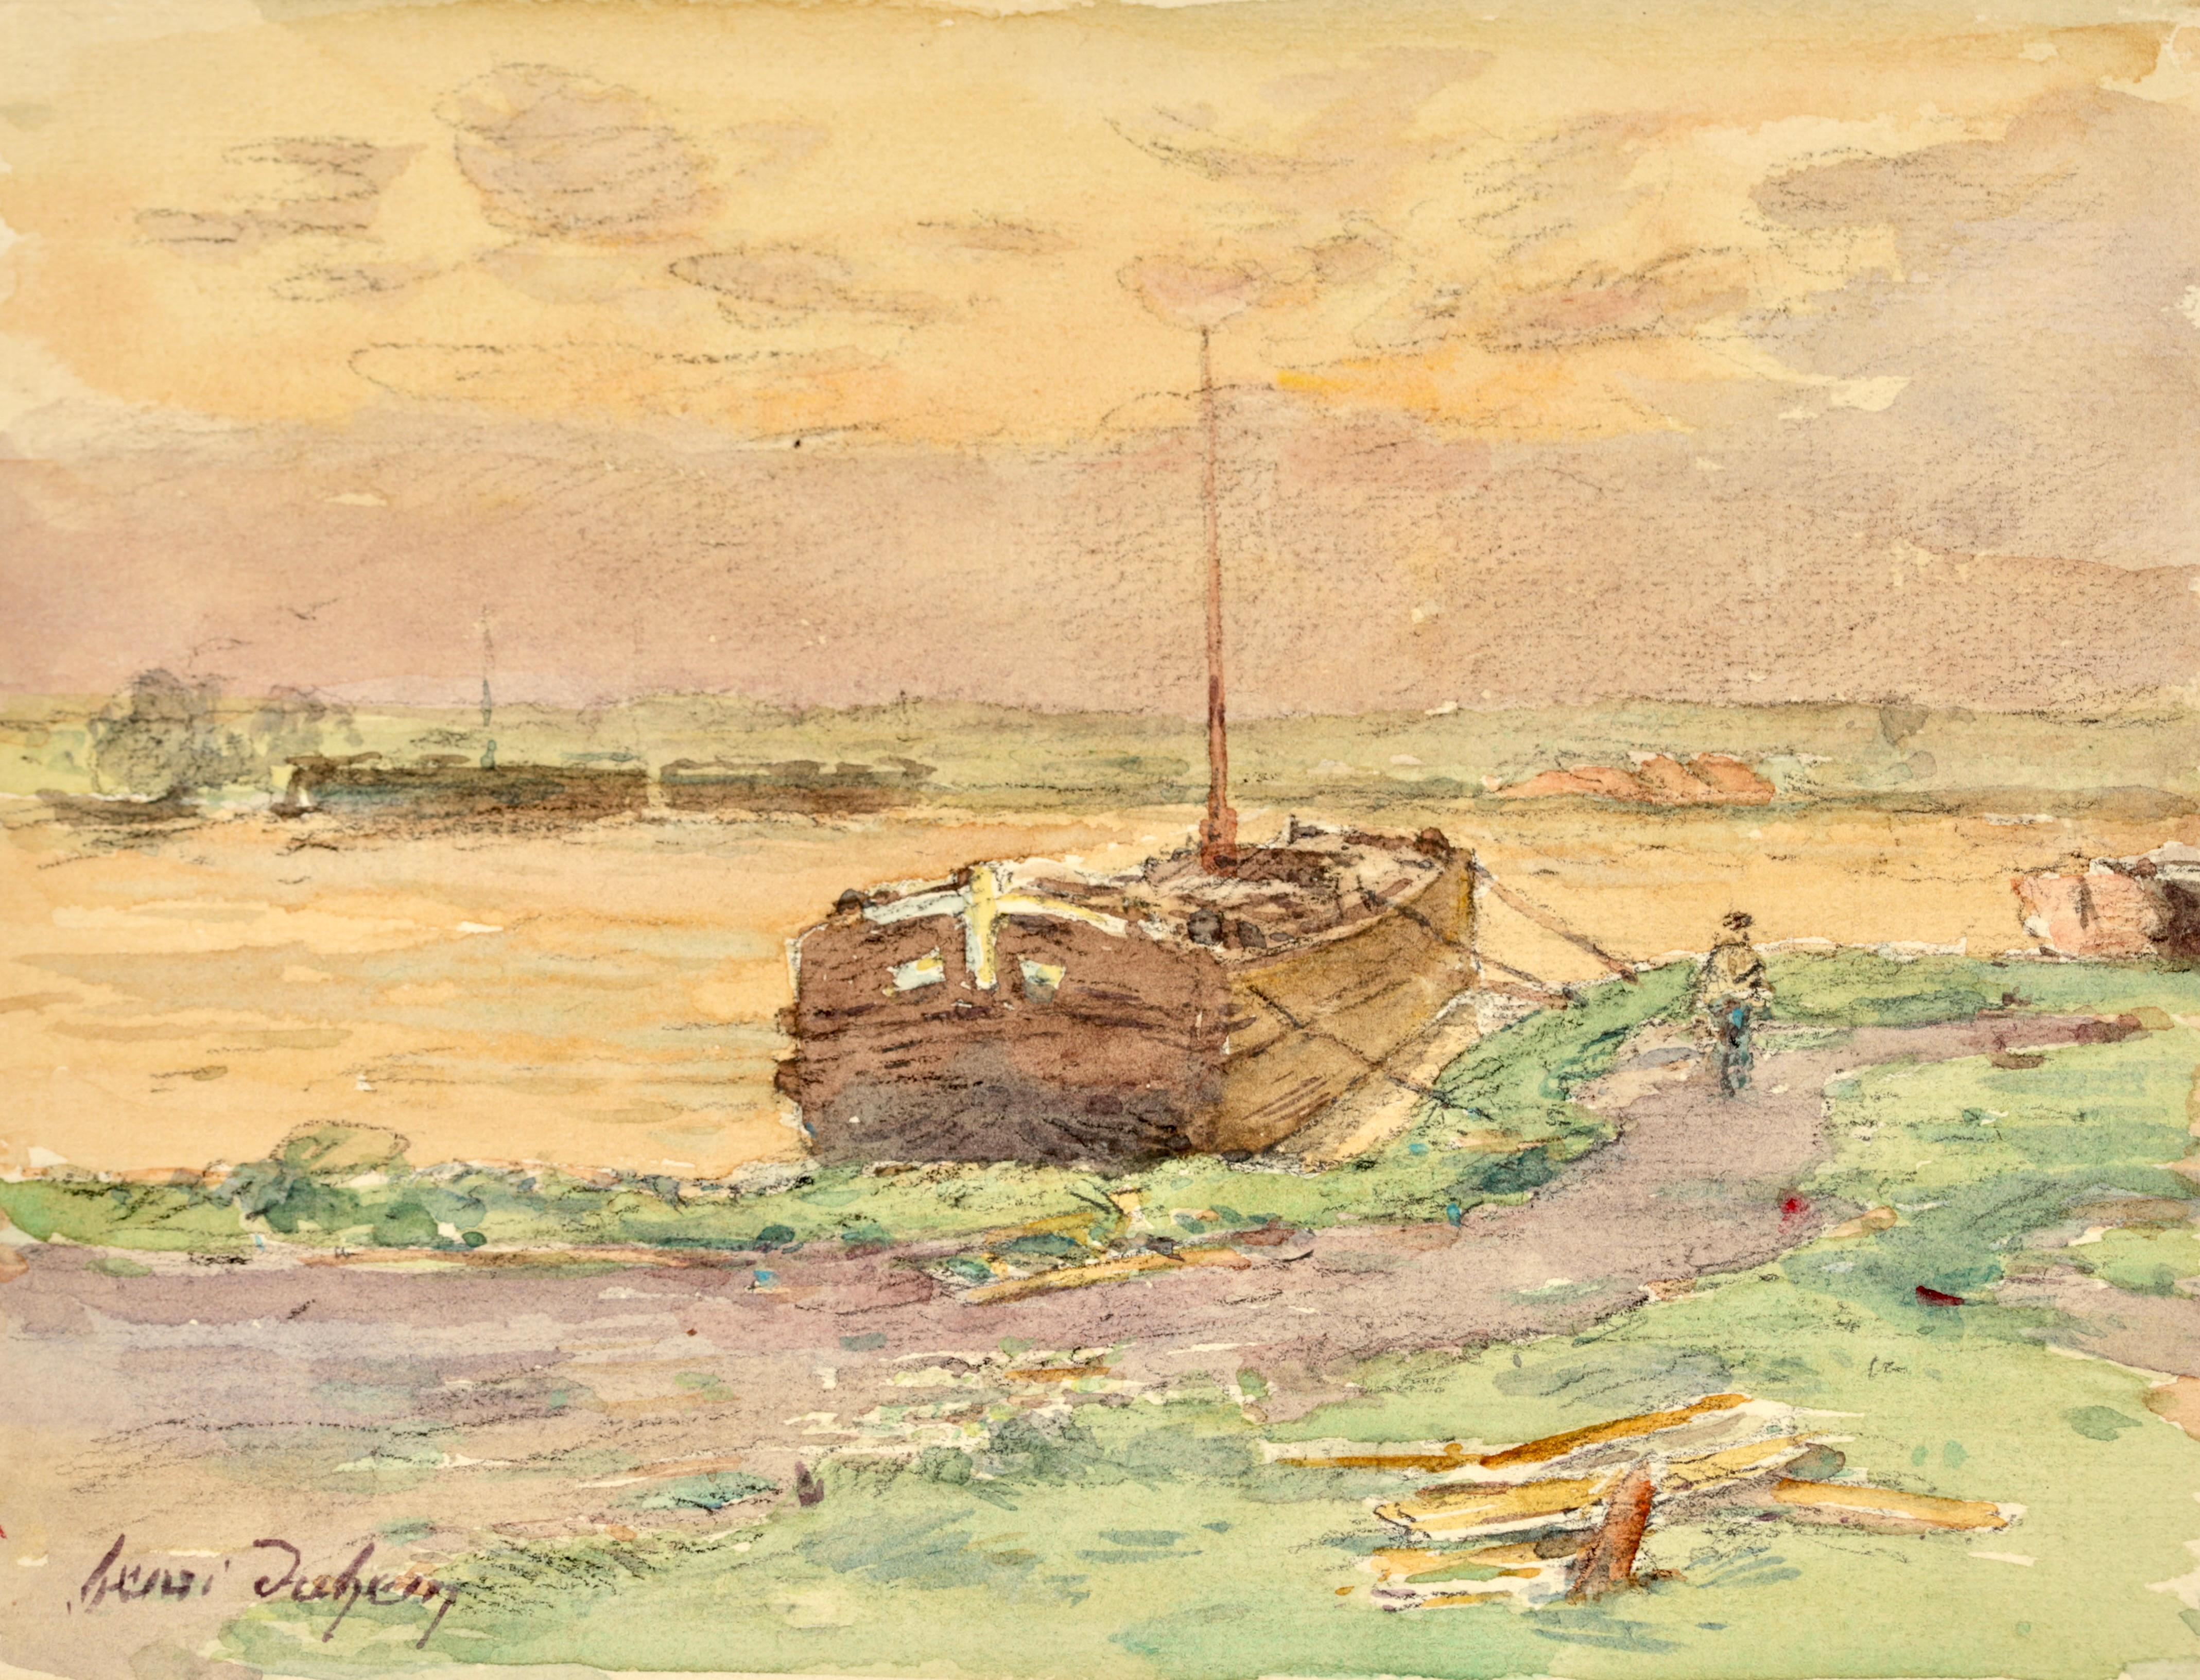 Signiertes impressionistisches Landschaftsaquarell auf Papier um 1920 von Henri Duhem. Das Werk zeigt eine Figur, die einen Weg neben einem am Flussufer vertäuten Boot entlanggeht. Die Sonne geht am Abend unter und taucht den Himmel in ein